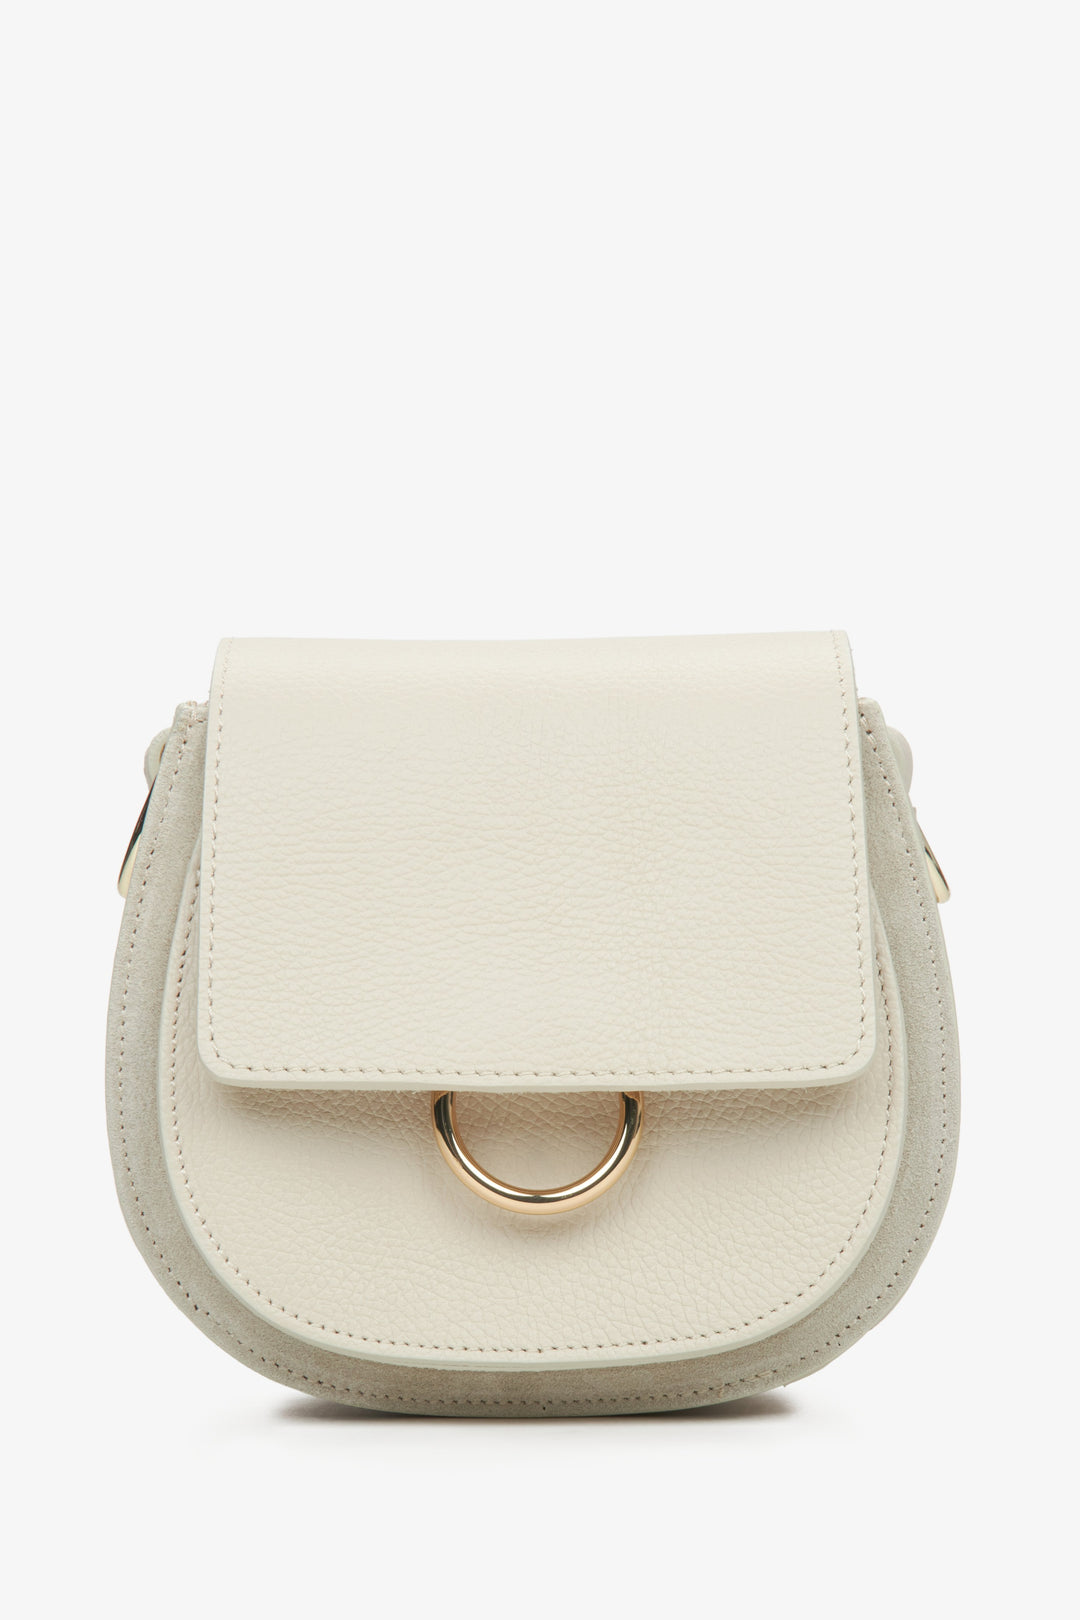 Mała jasnobeżowa torebka damska w kształcie podkowy z włoskiej skóry naturalnej Premium ER00115064